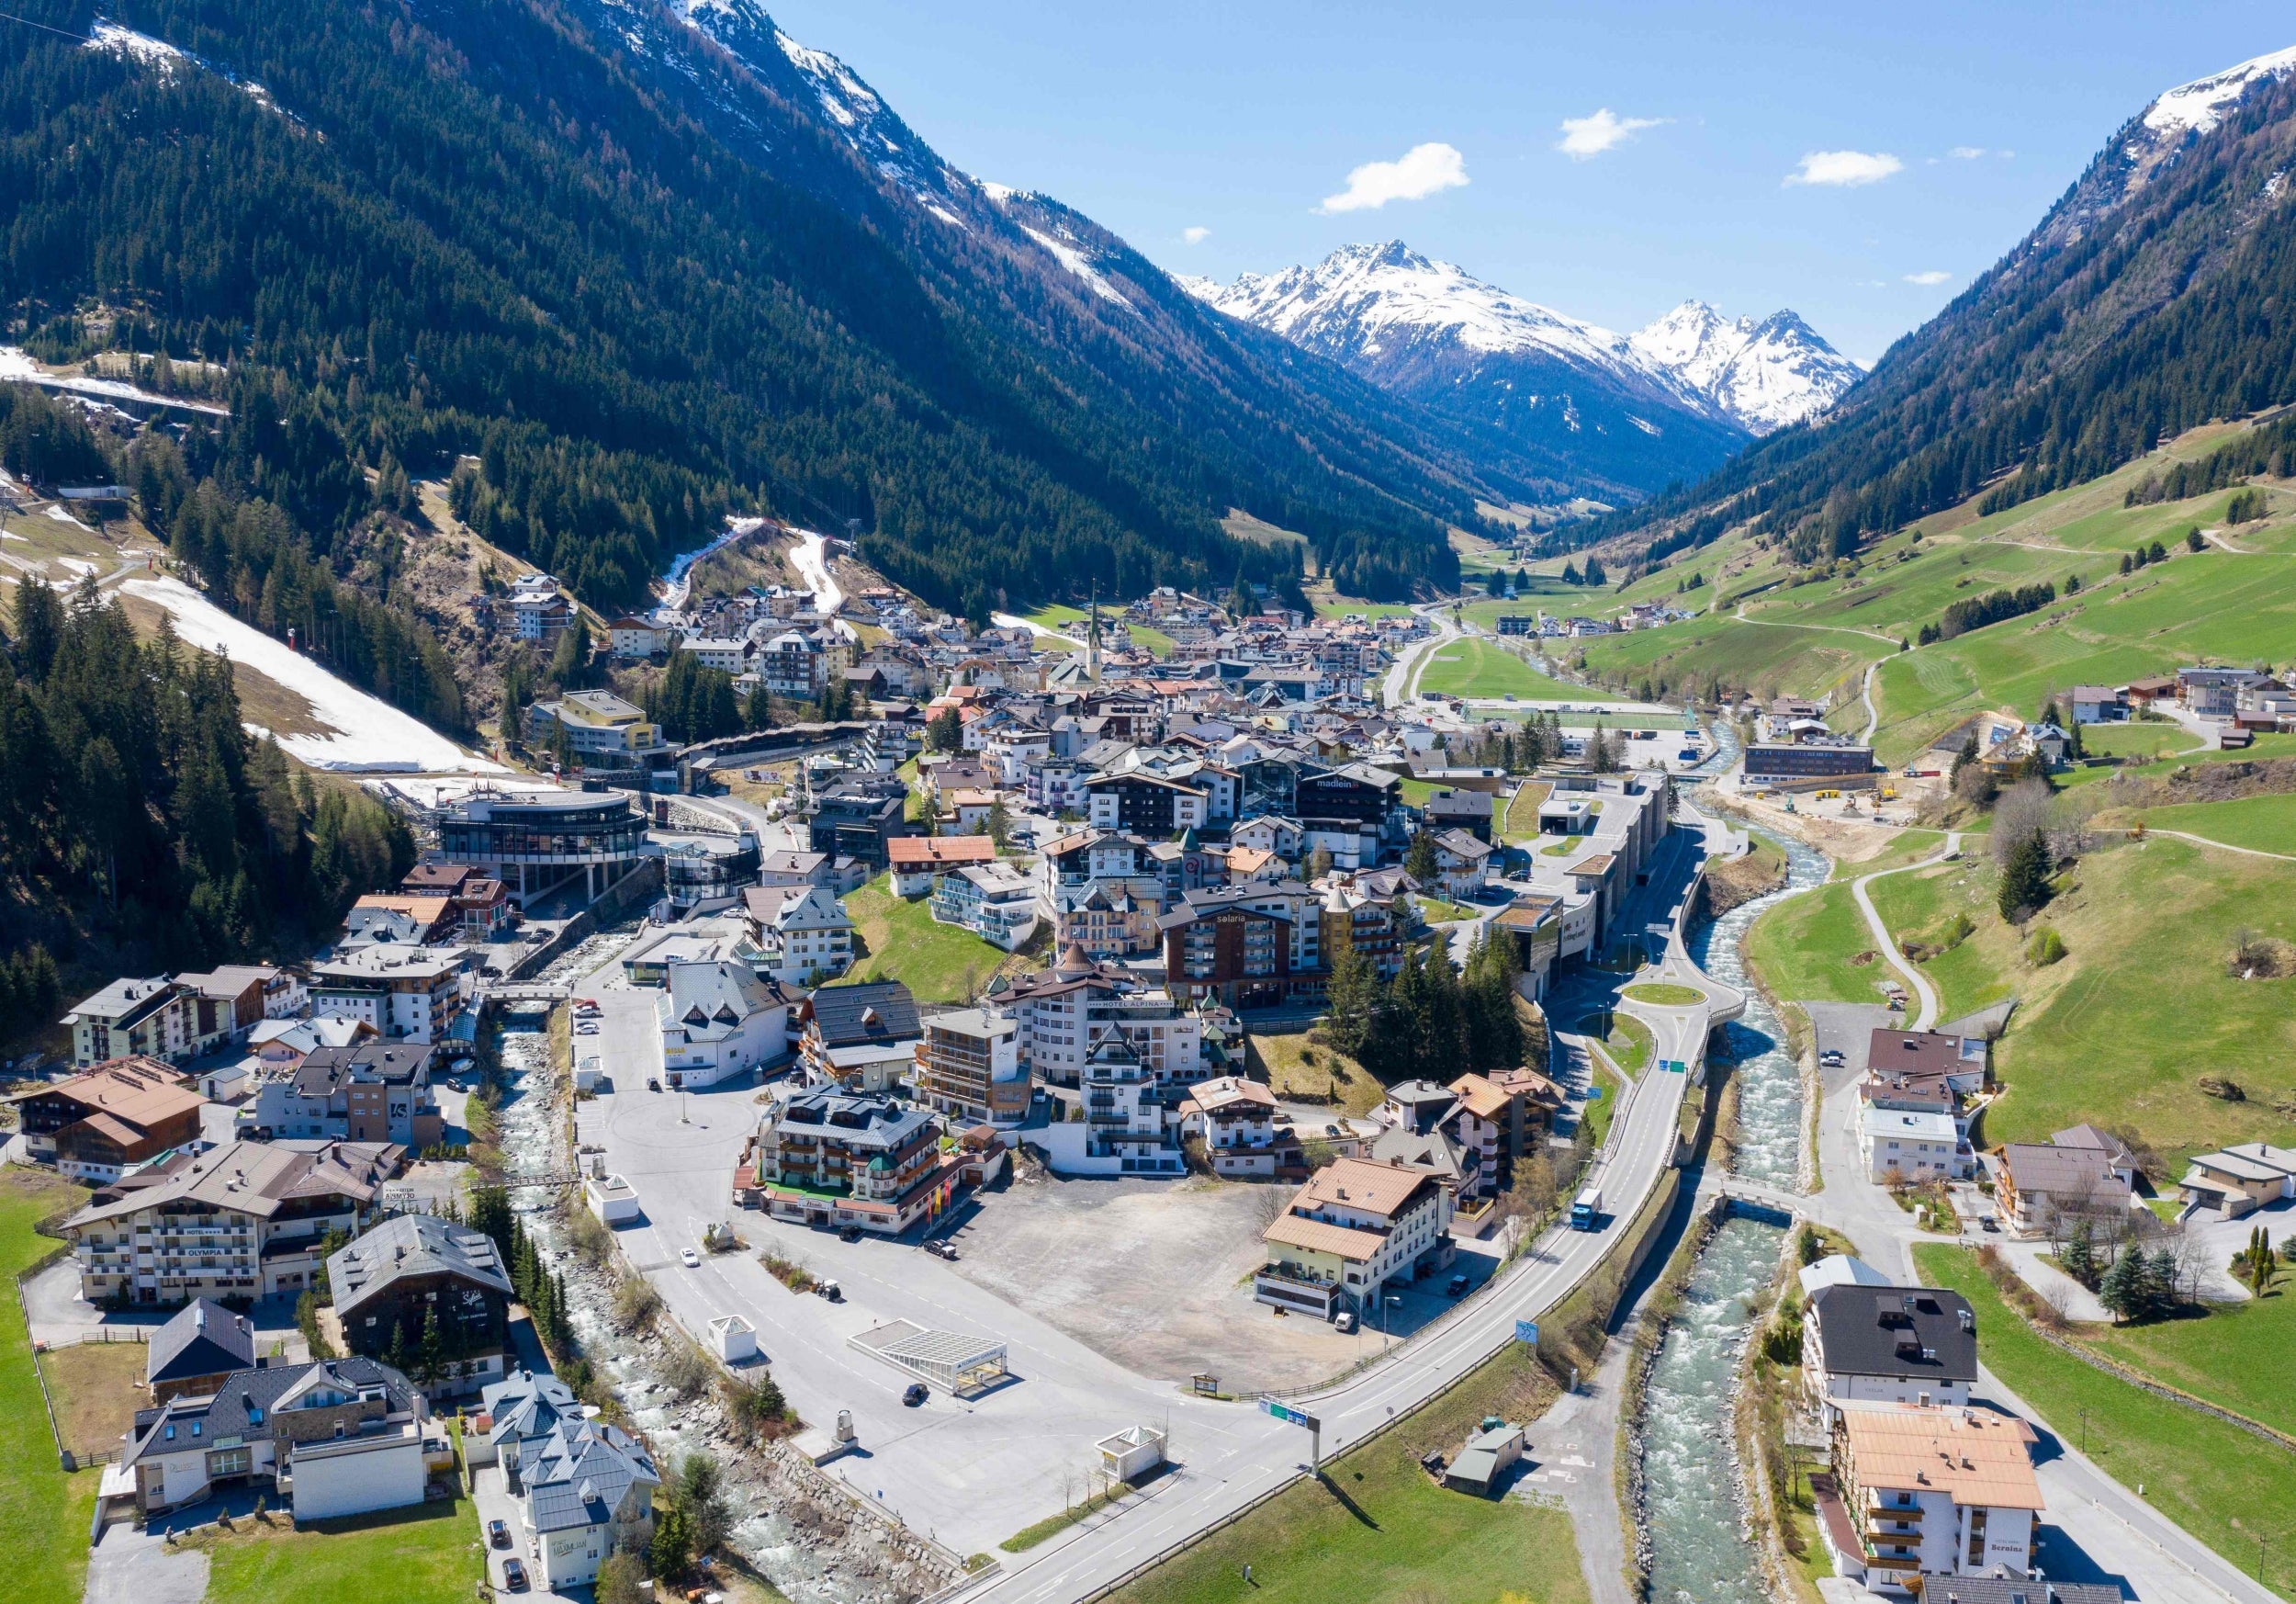 Ischgl (pictured) is a ski resort in Austria's worst hit region